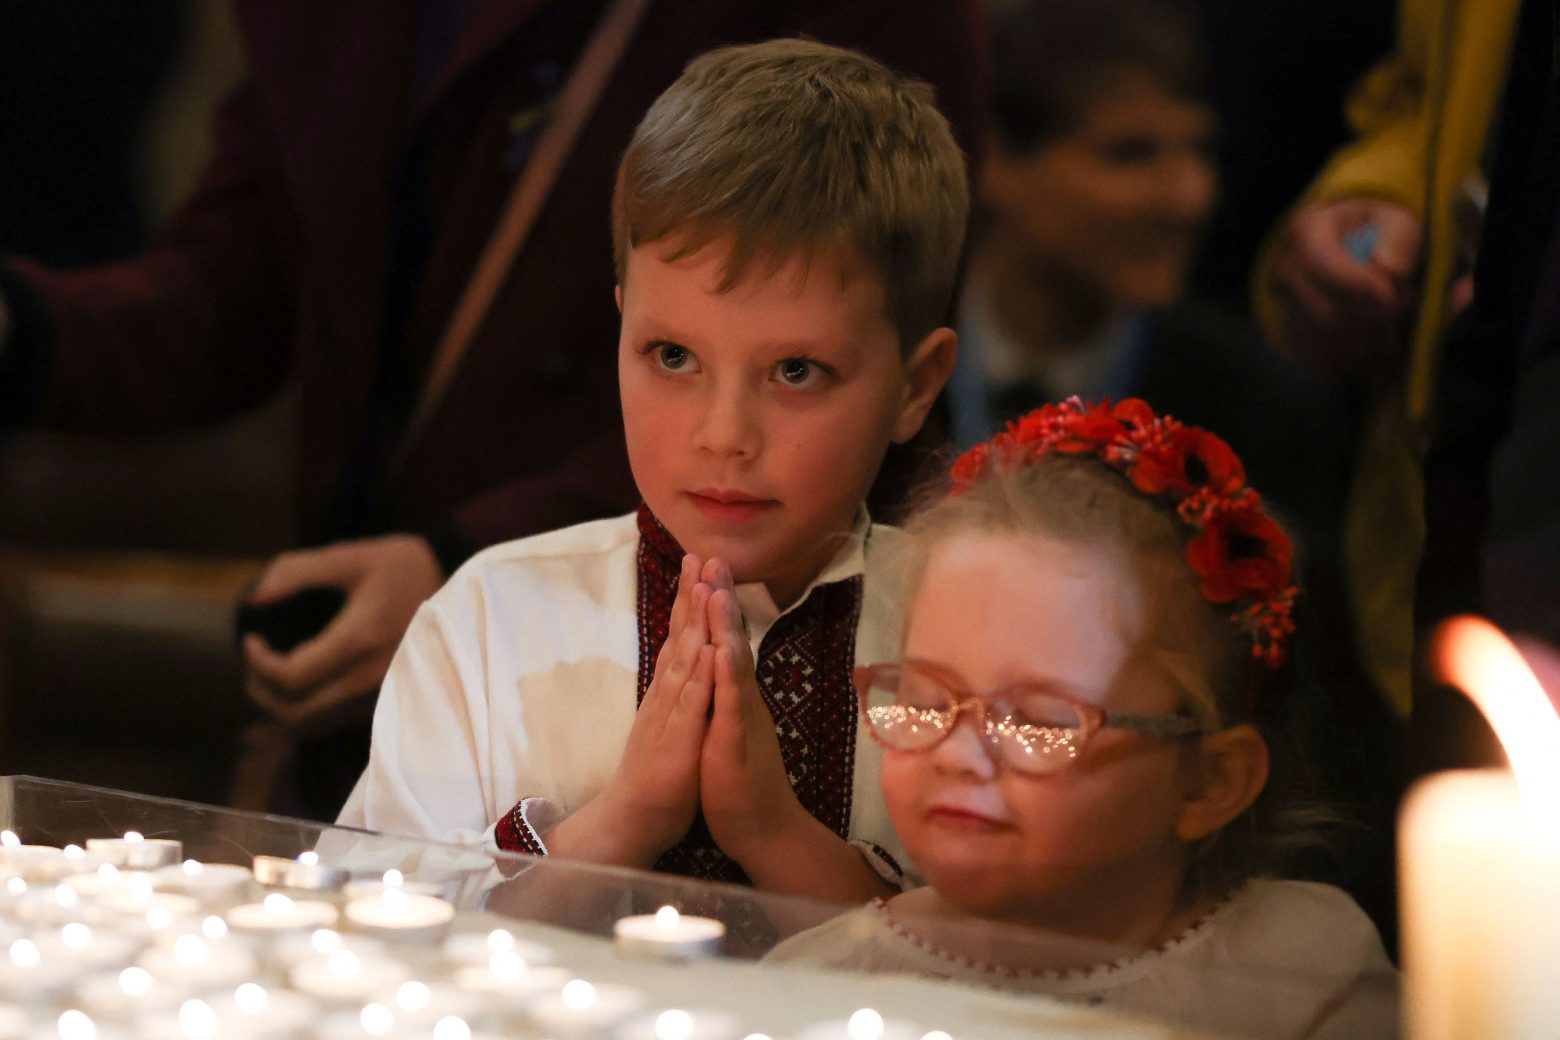 Πόλεμος στην Ουκρανία:  Από την αρχή της εισβολής έχουν σκοτωθεί 41 παιδιά και 76 έχουν τραυματισθεί